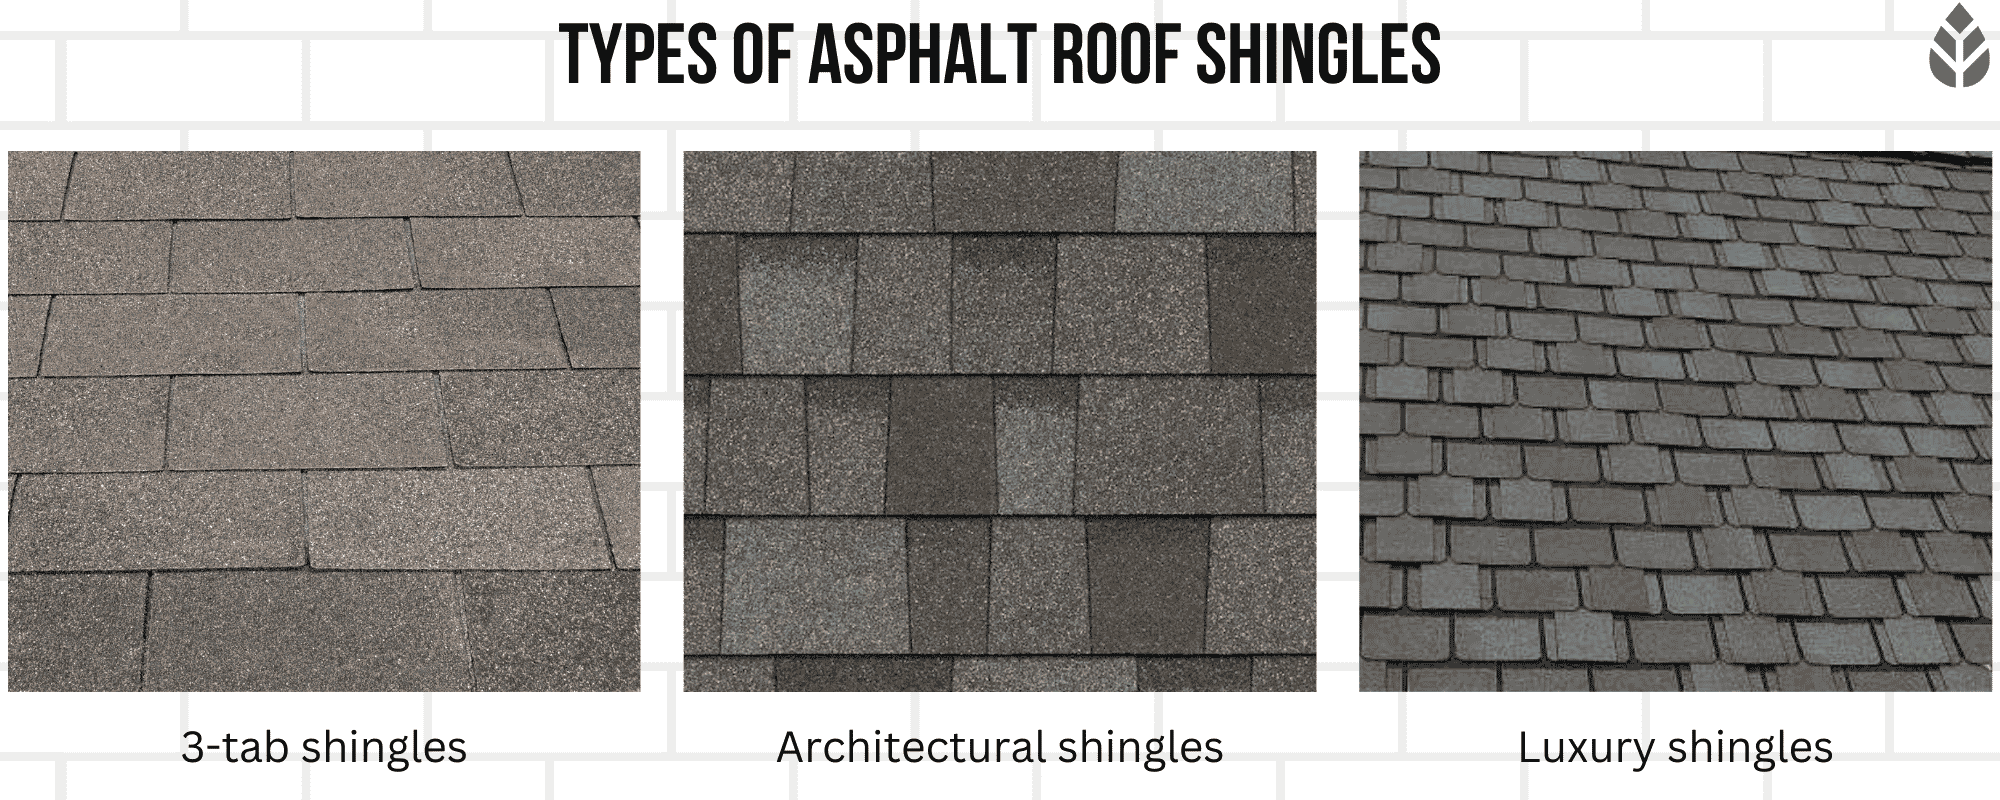 Types of asphalt roof shingles